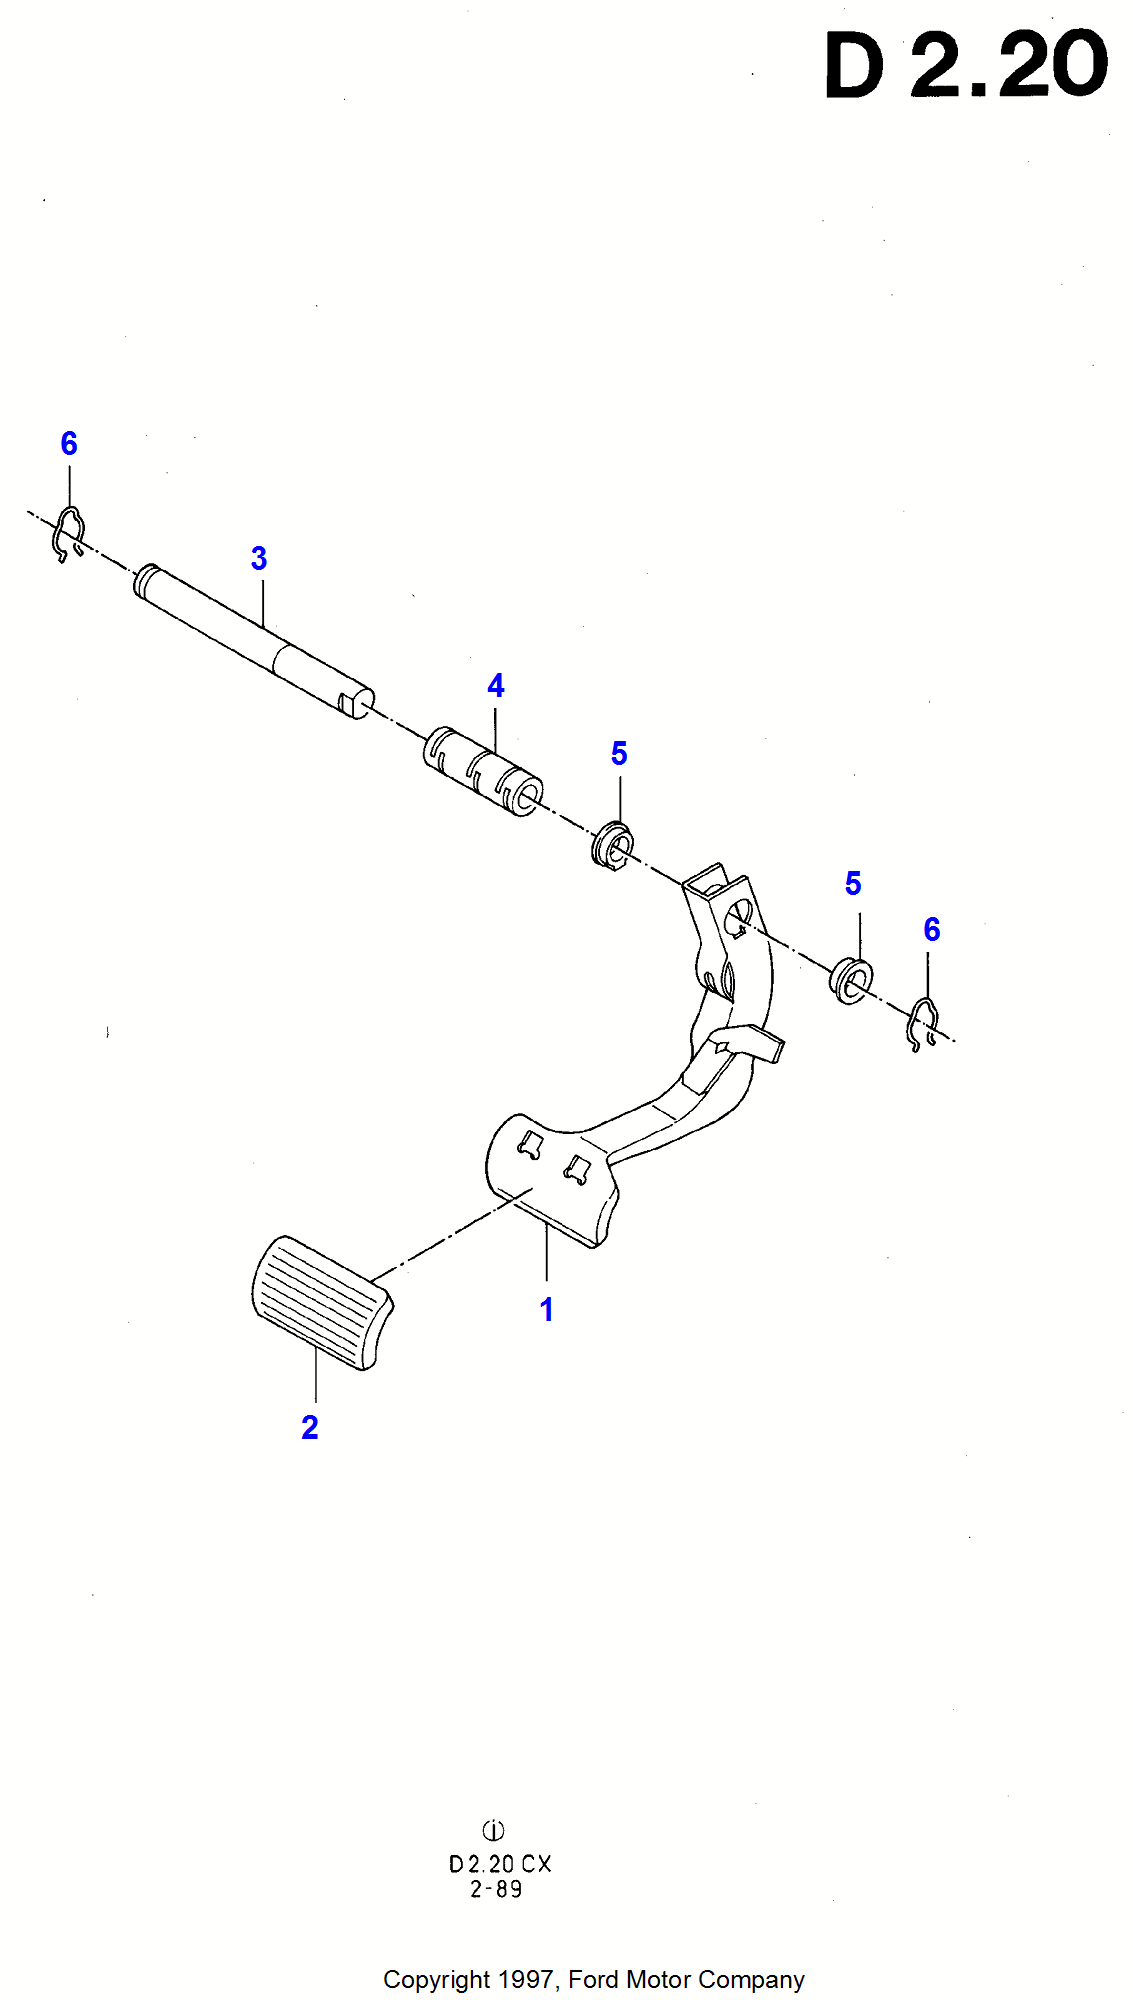 Brake Pedal voor Ford Fiesta Fiesta 1989-1996               (CX)